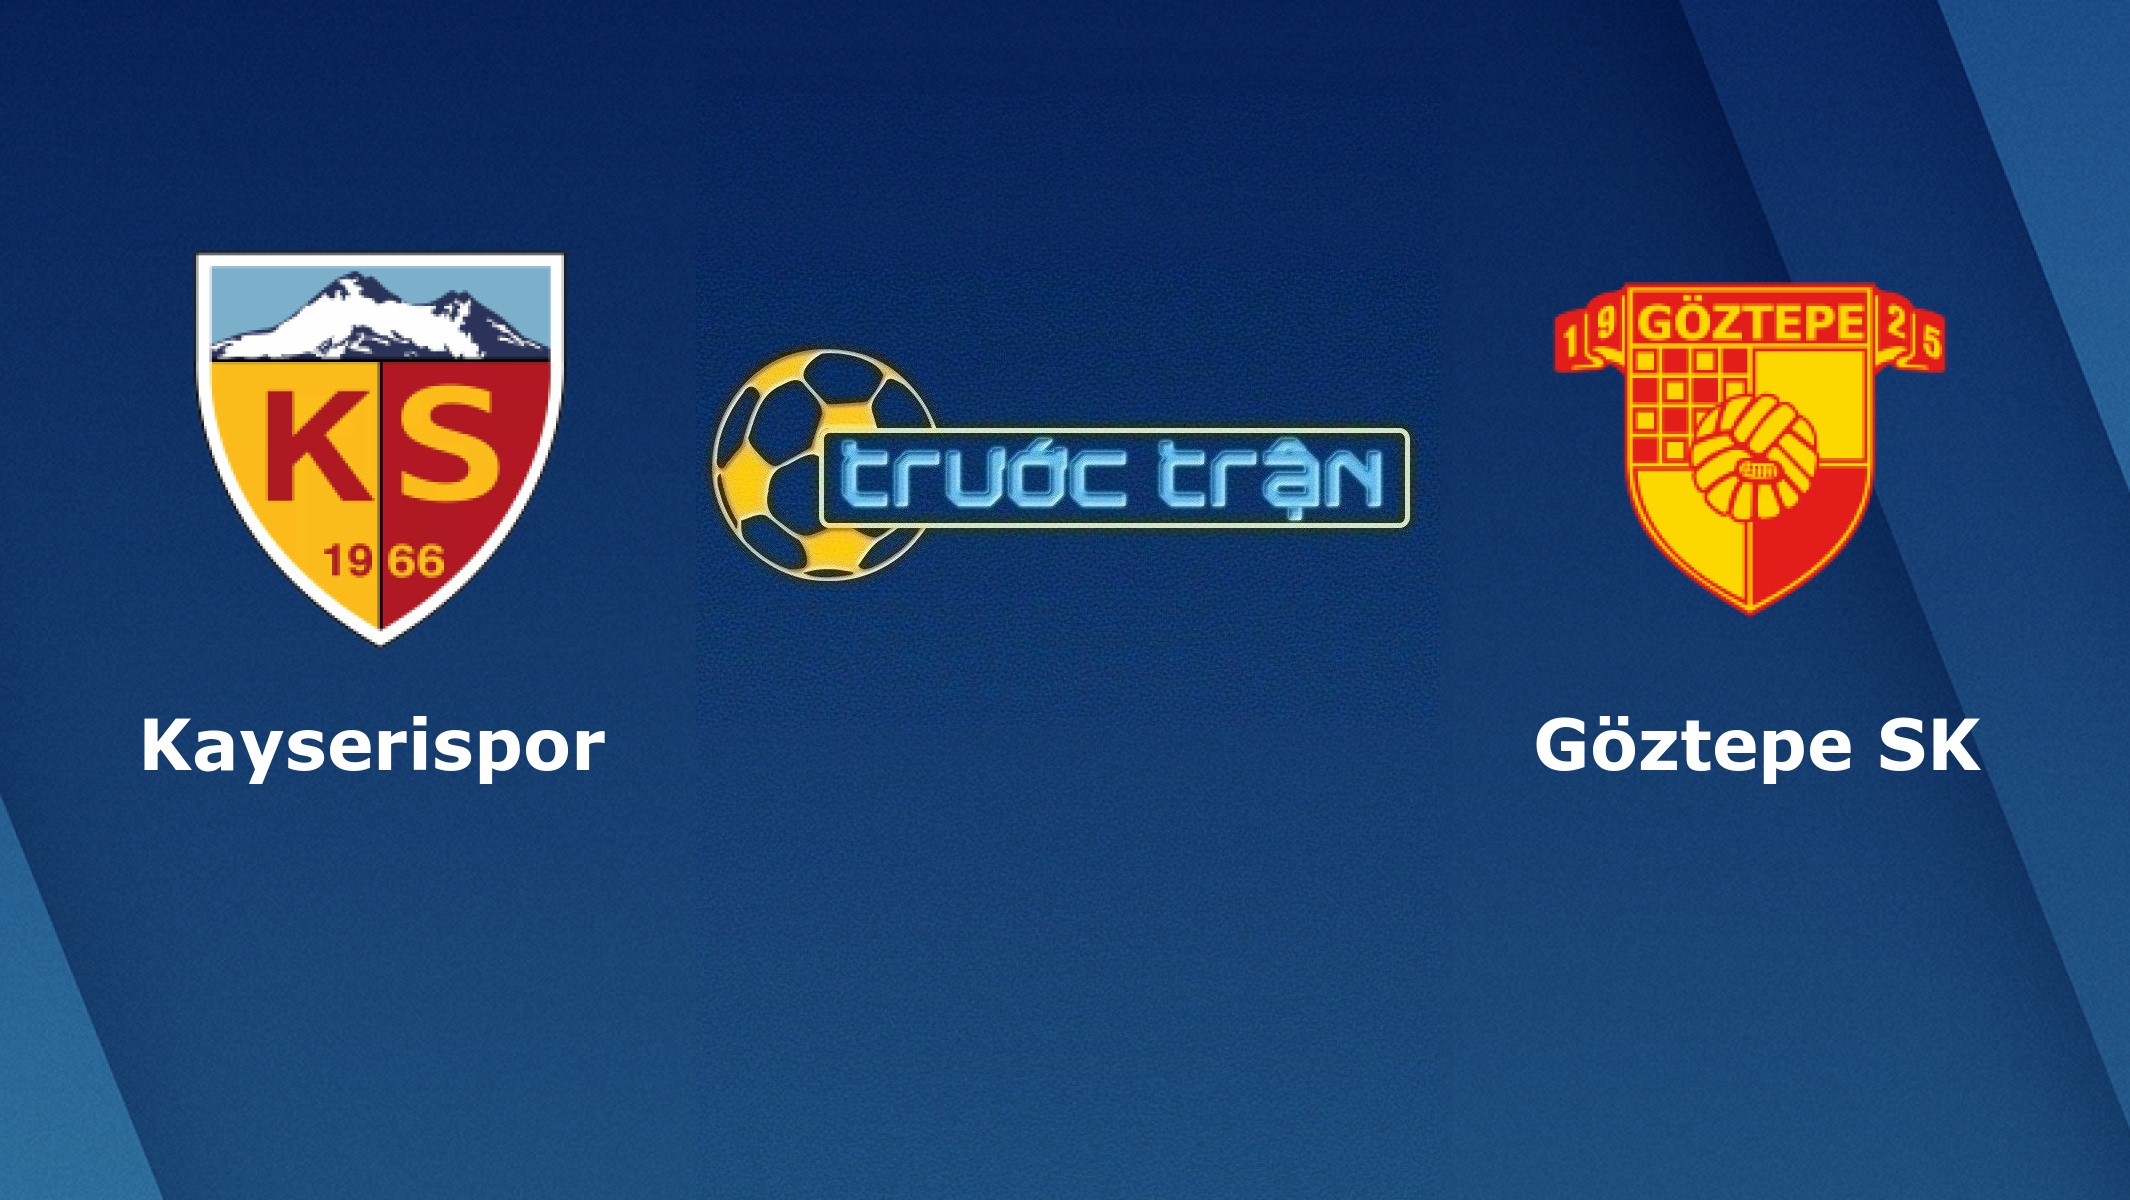 Kayserispor vs Goztepe – Tip kèo bóng đá hôm nay – 03/03